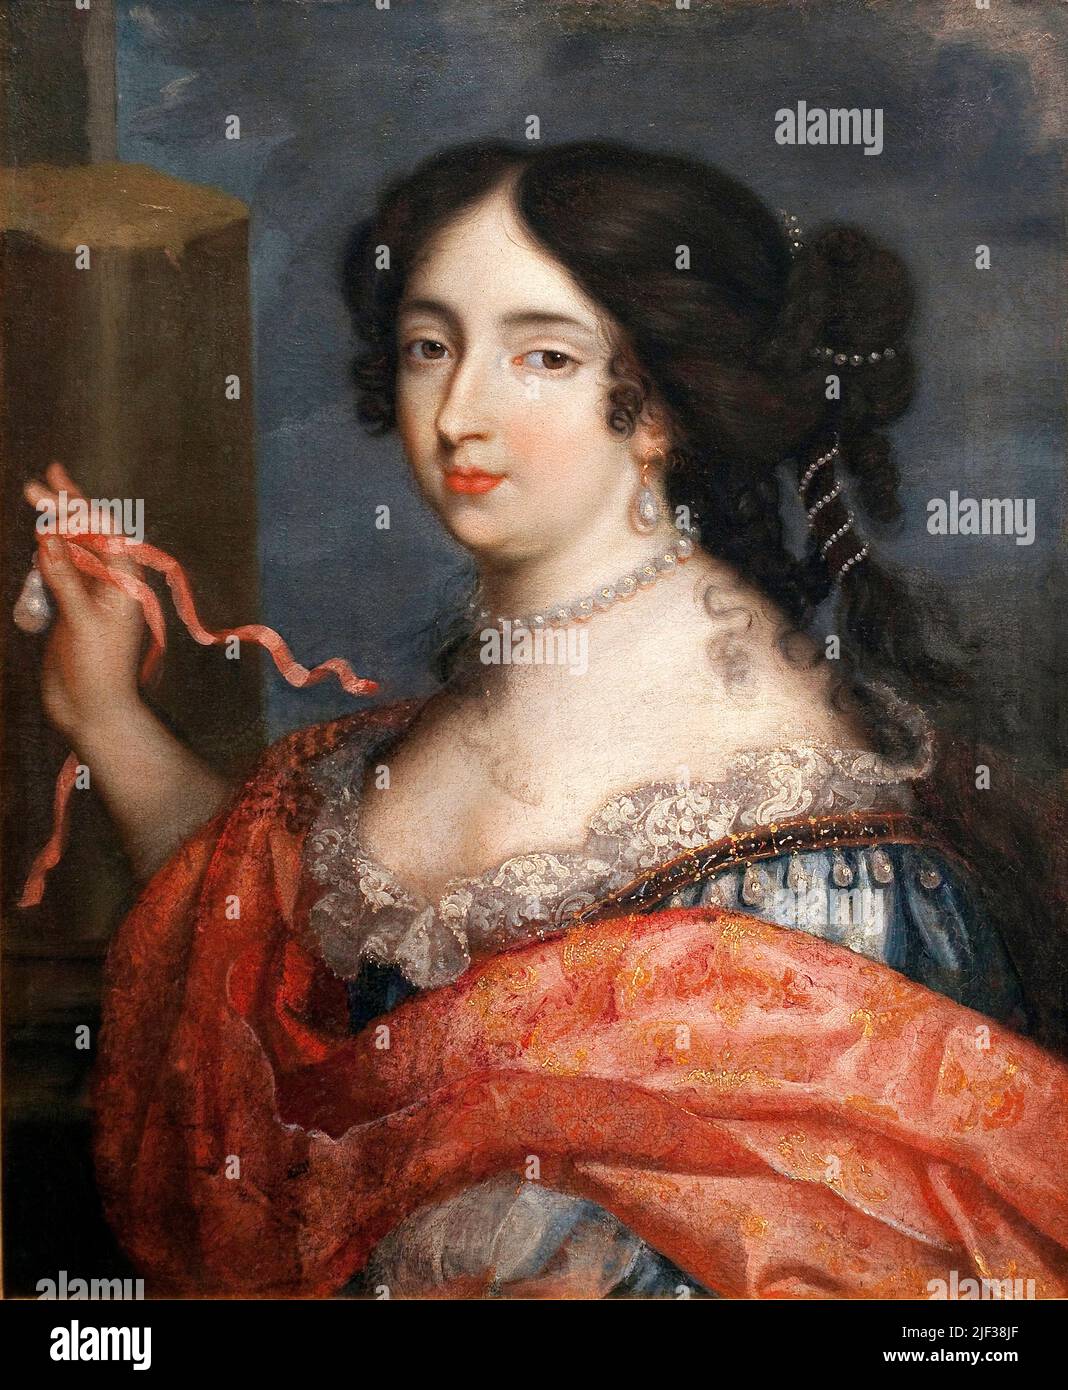 Françoise d'Aubigne (Madame de Maintenon, 1635-1719). Peinture de Pierre I Mignard, dit le Romain (1612-1695), aile sur toile, art francais, 17e siecle. Musée des Beaux-Arts de Niort. Banque D'Images